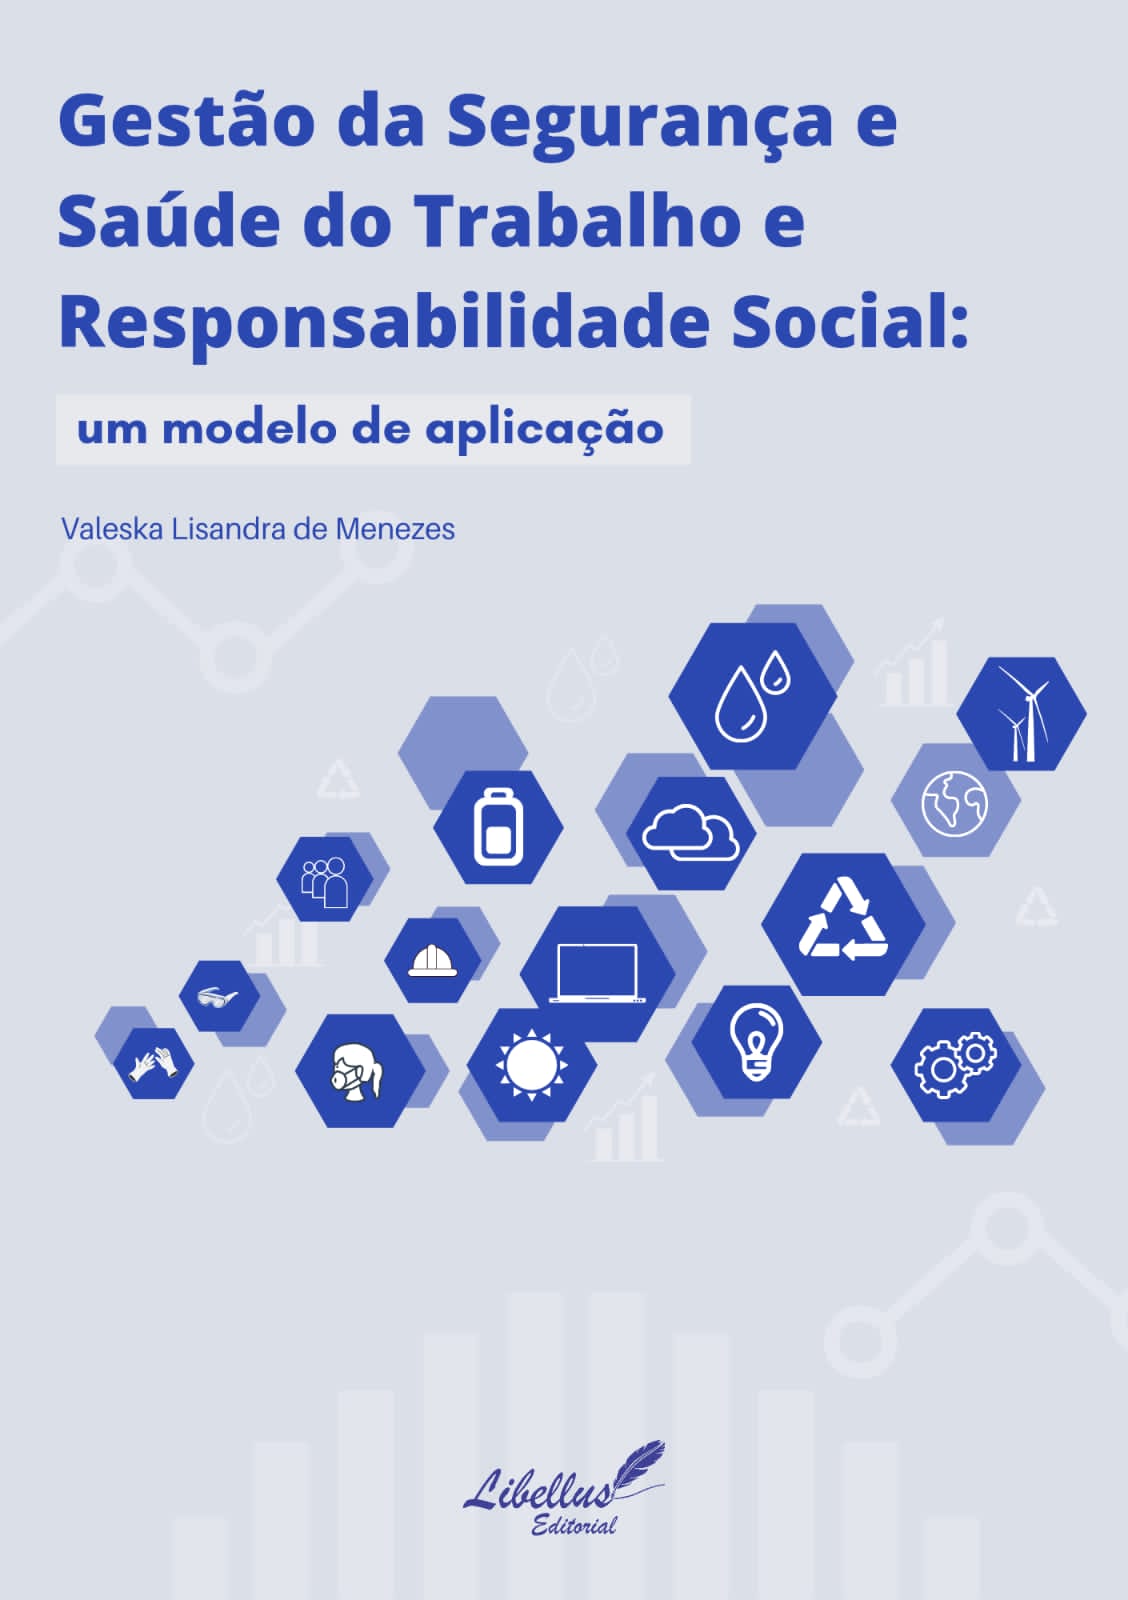 Gestão da Segurança e Saúde do Trabalho e Responsabilidade Social: um modelo de aplicação